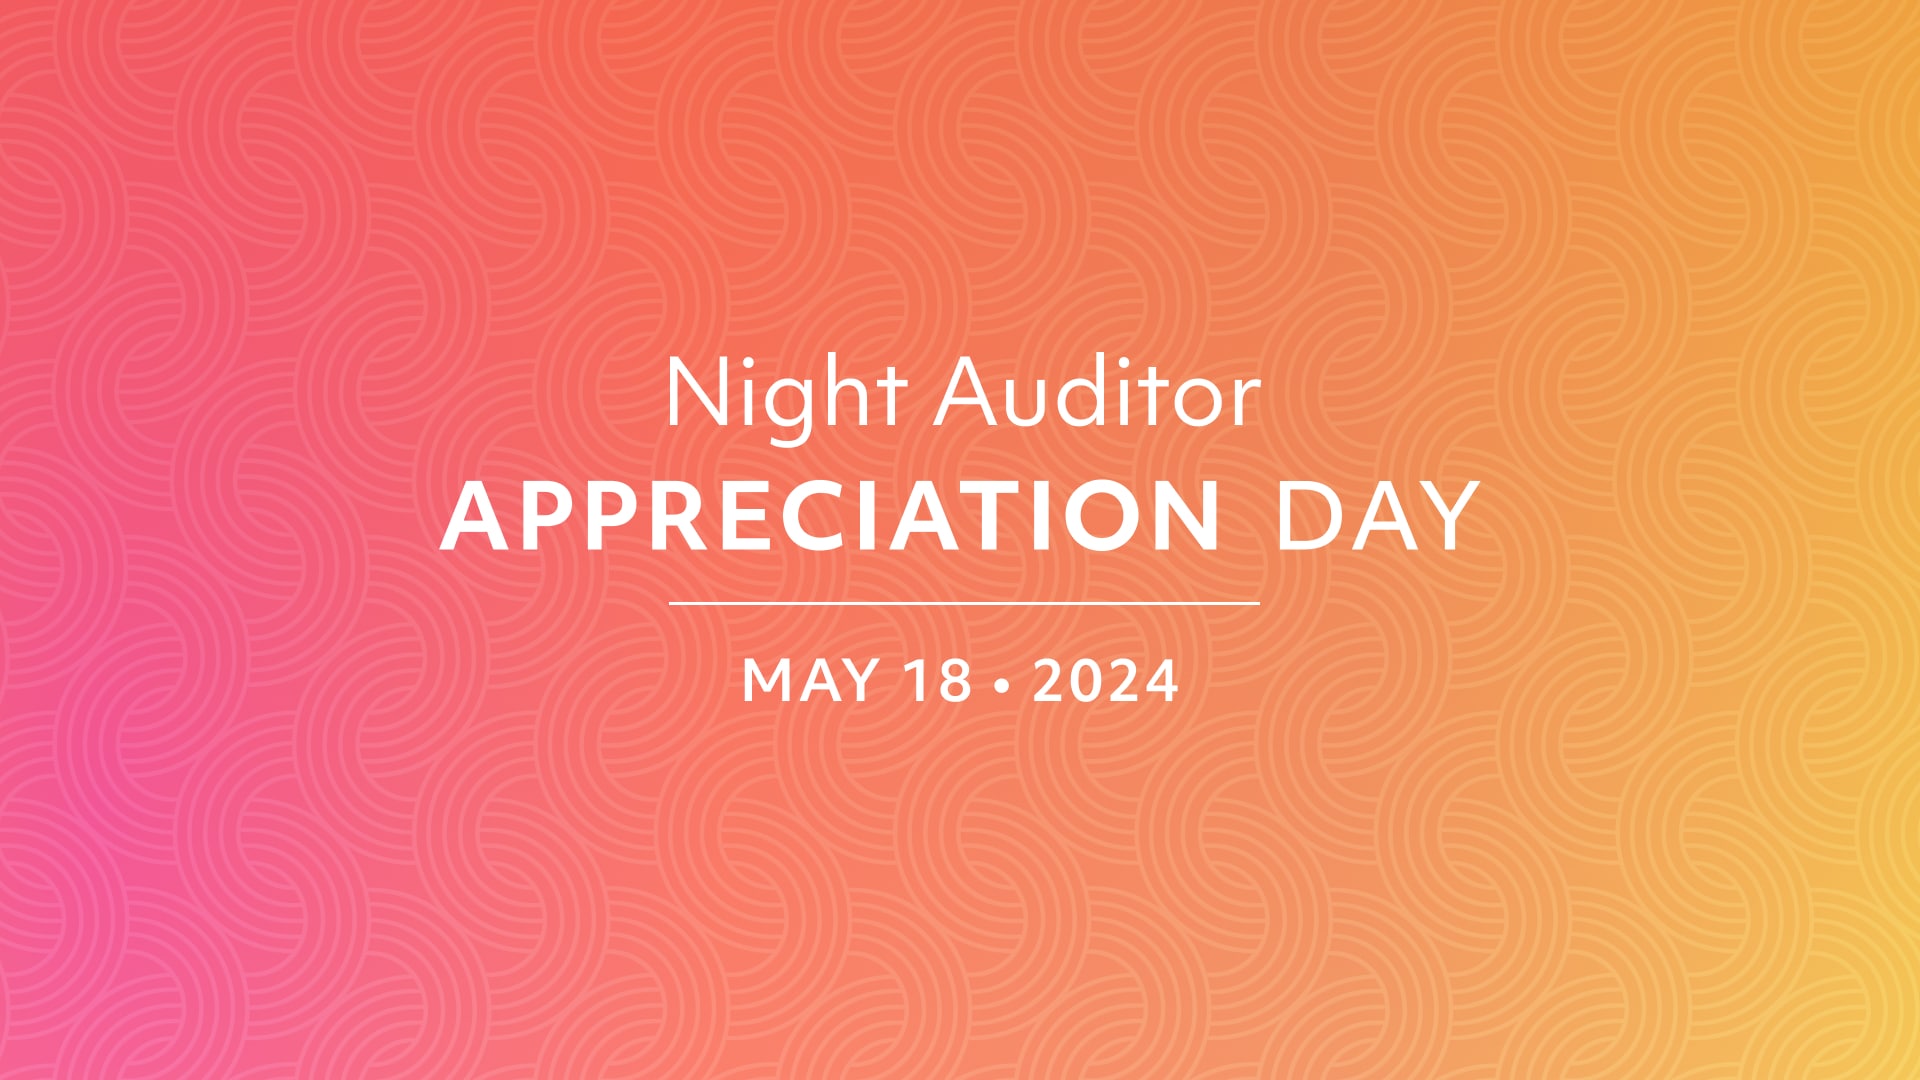 Night Auditor Appreciation Day